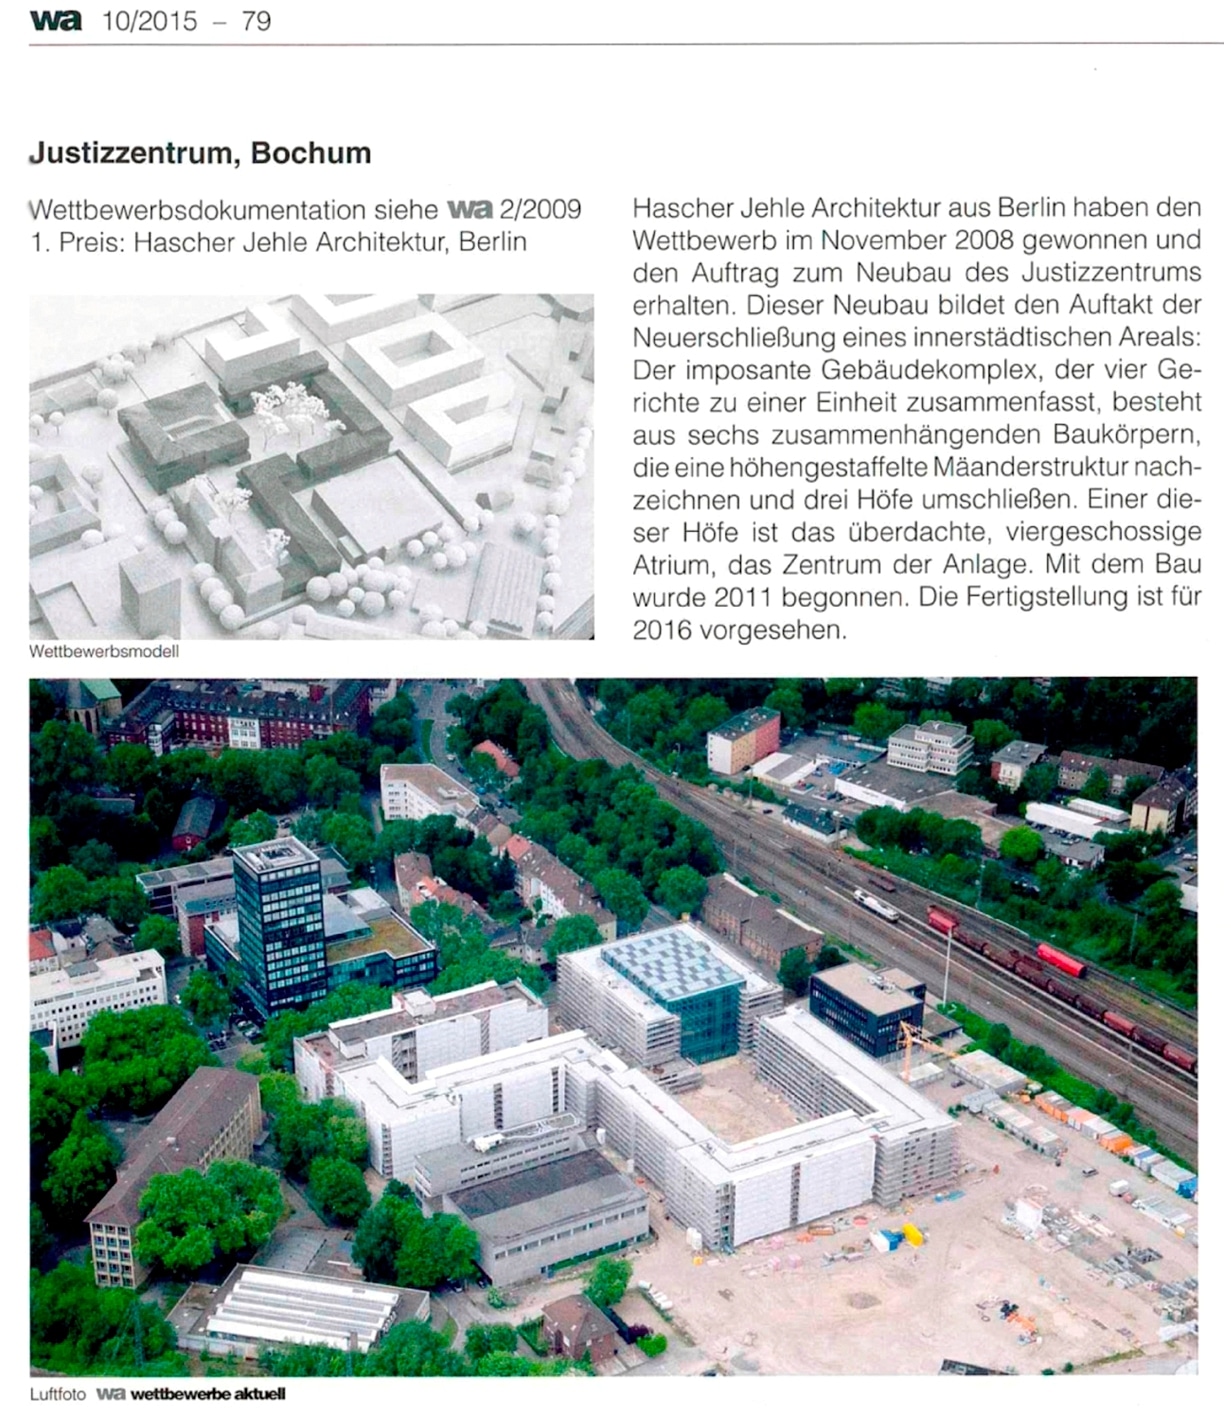 Justizzentrum-Bochum-Wettbewerbe-Aktuell-10-2015